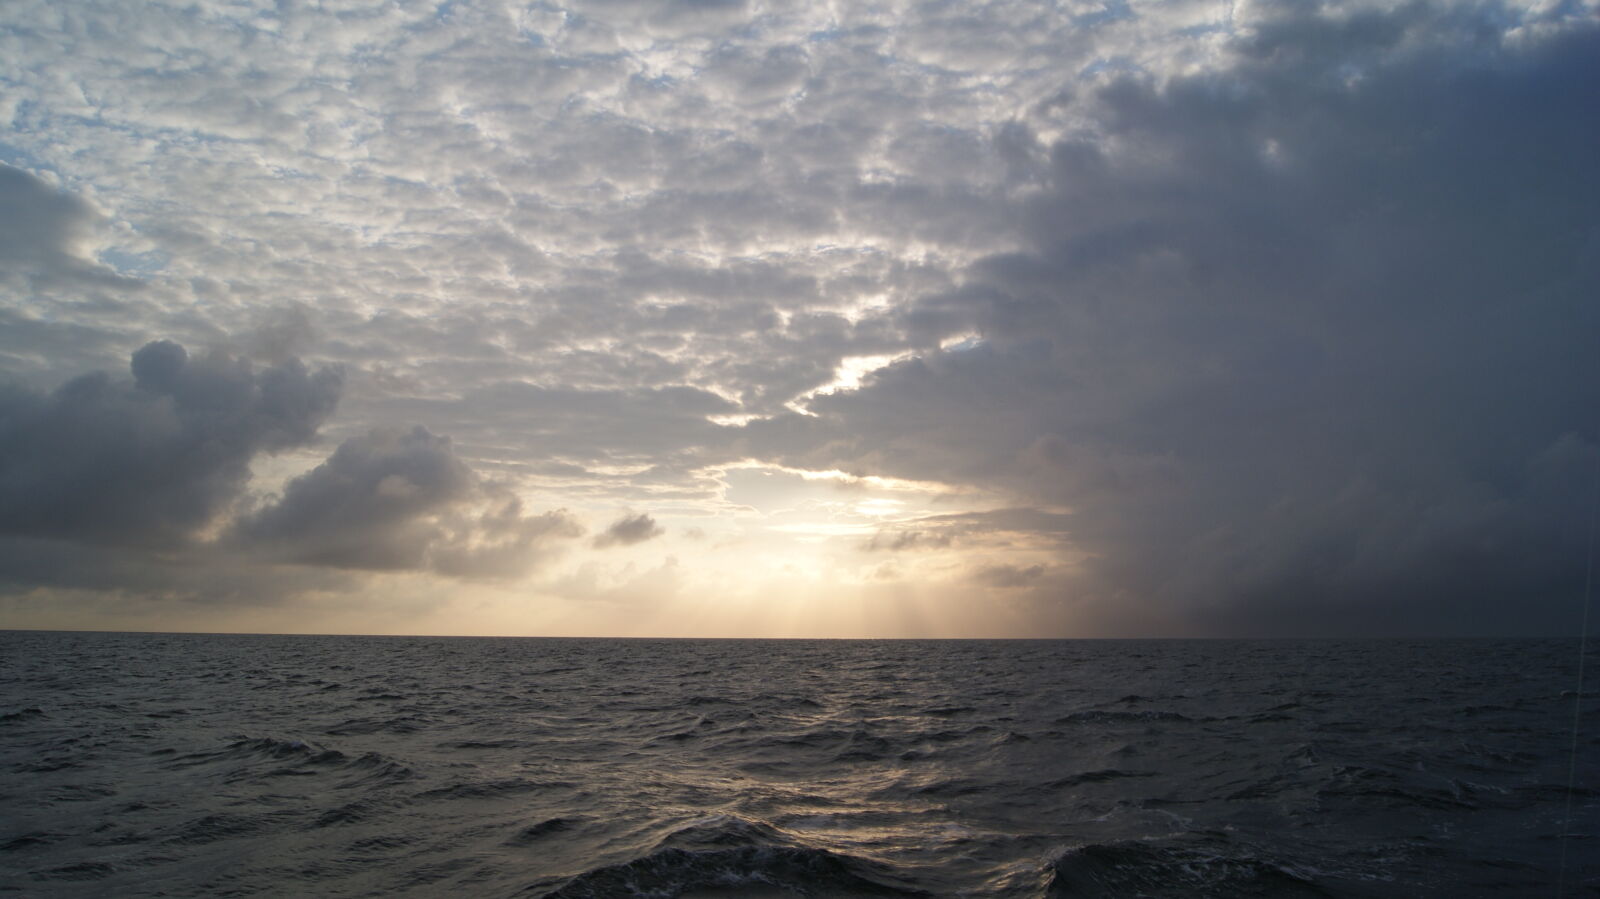 Sony Alpha DSLR-A230 sample photo. Cloud, ocean, rain, sea photography